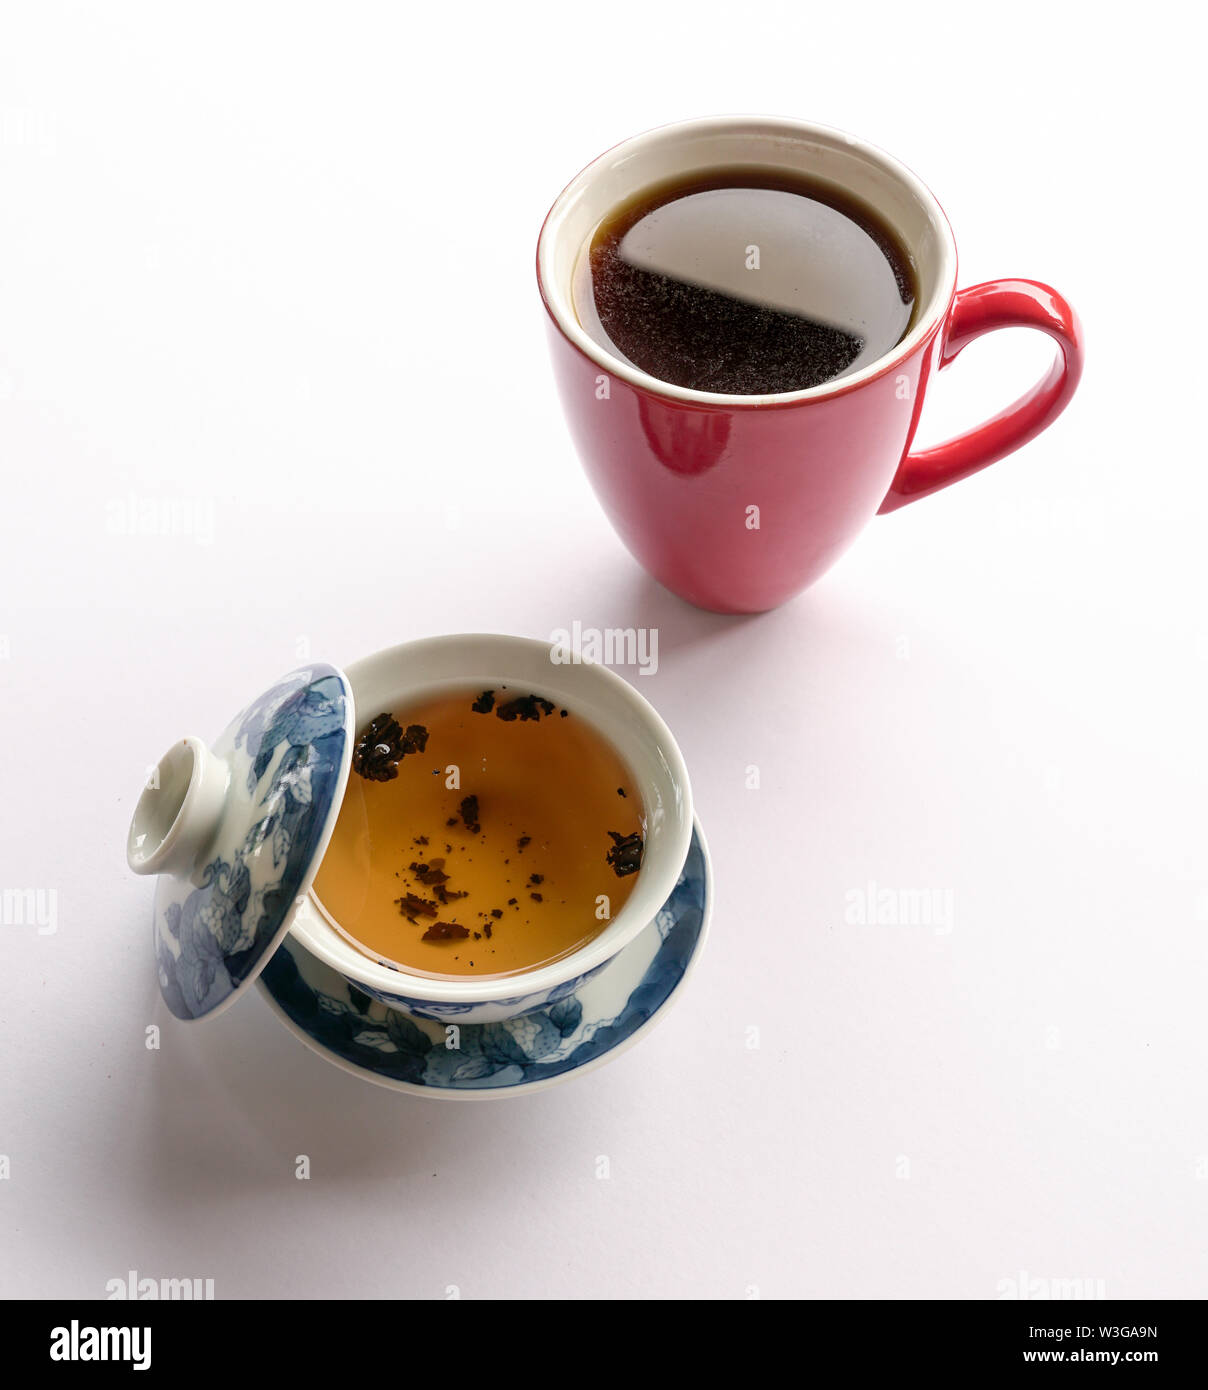 Chinesischer Tee oder Americano. Tee oder Kaffee. Präferenz entweder für Tee oder Kaffee. Östliche oder westliche Kultur kontrast Konzept. Stockfoto